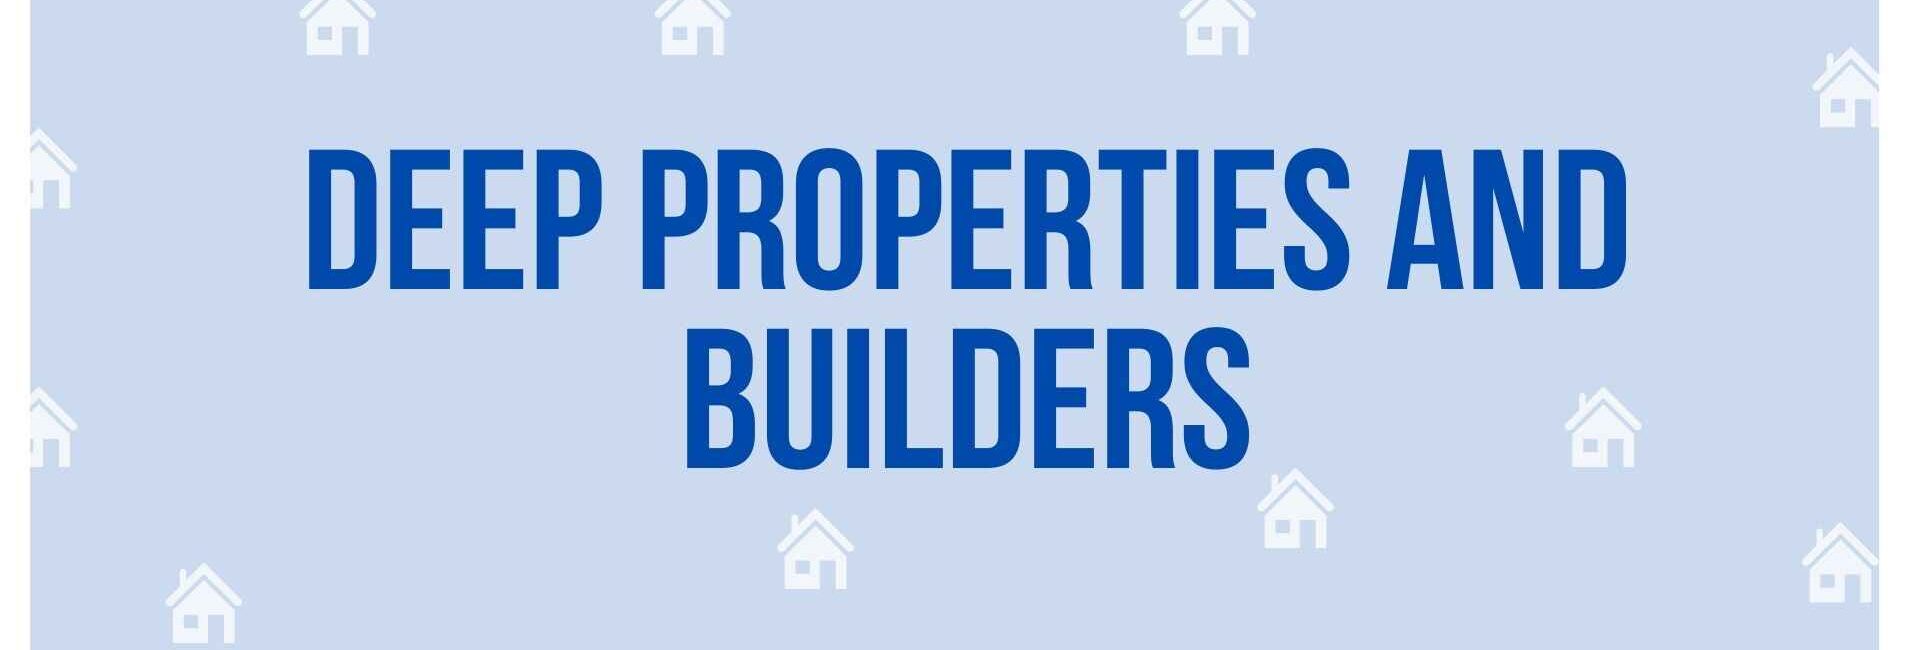 Deep Properties and Builders - Property Dealer in Noida